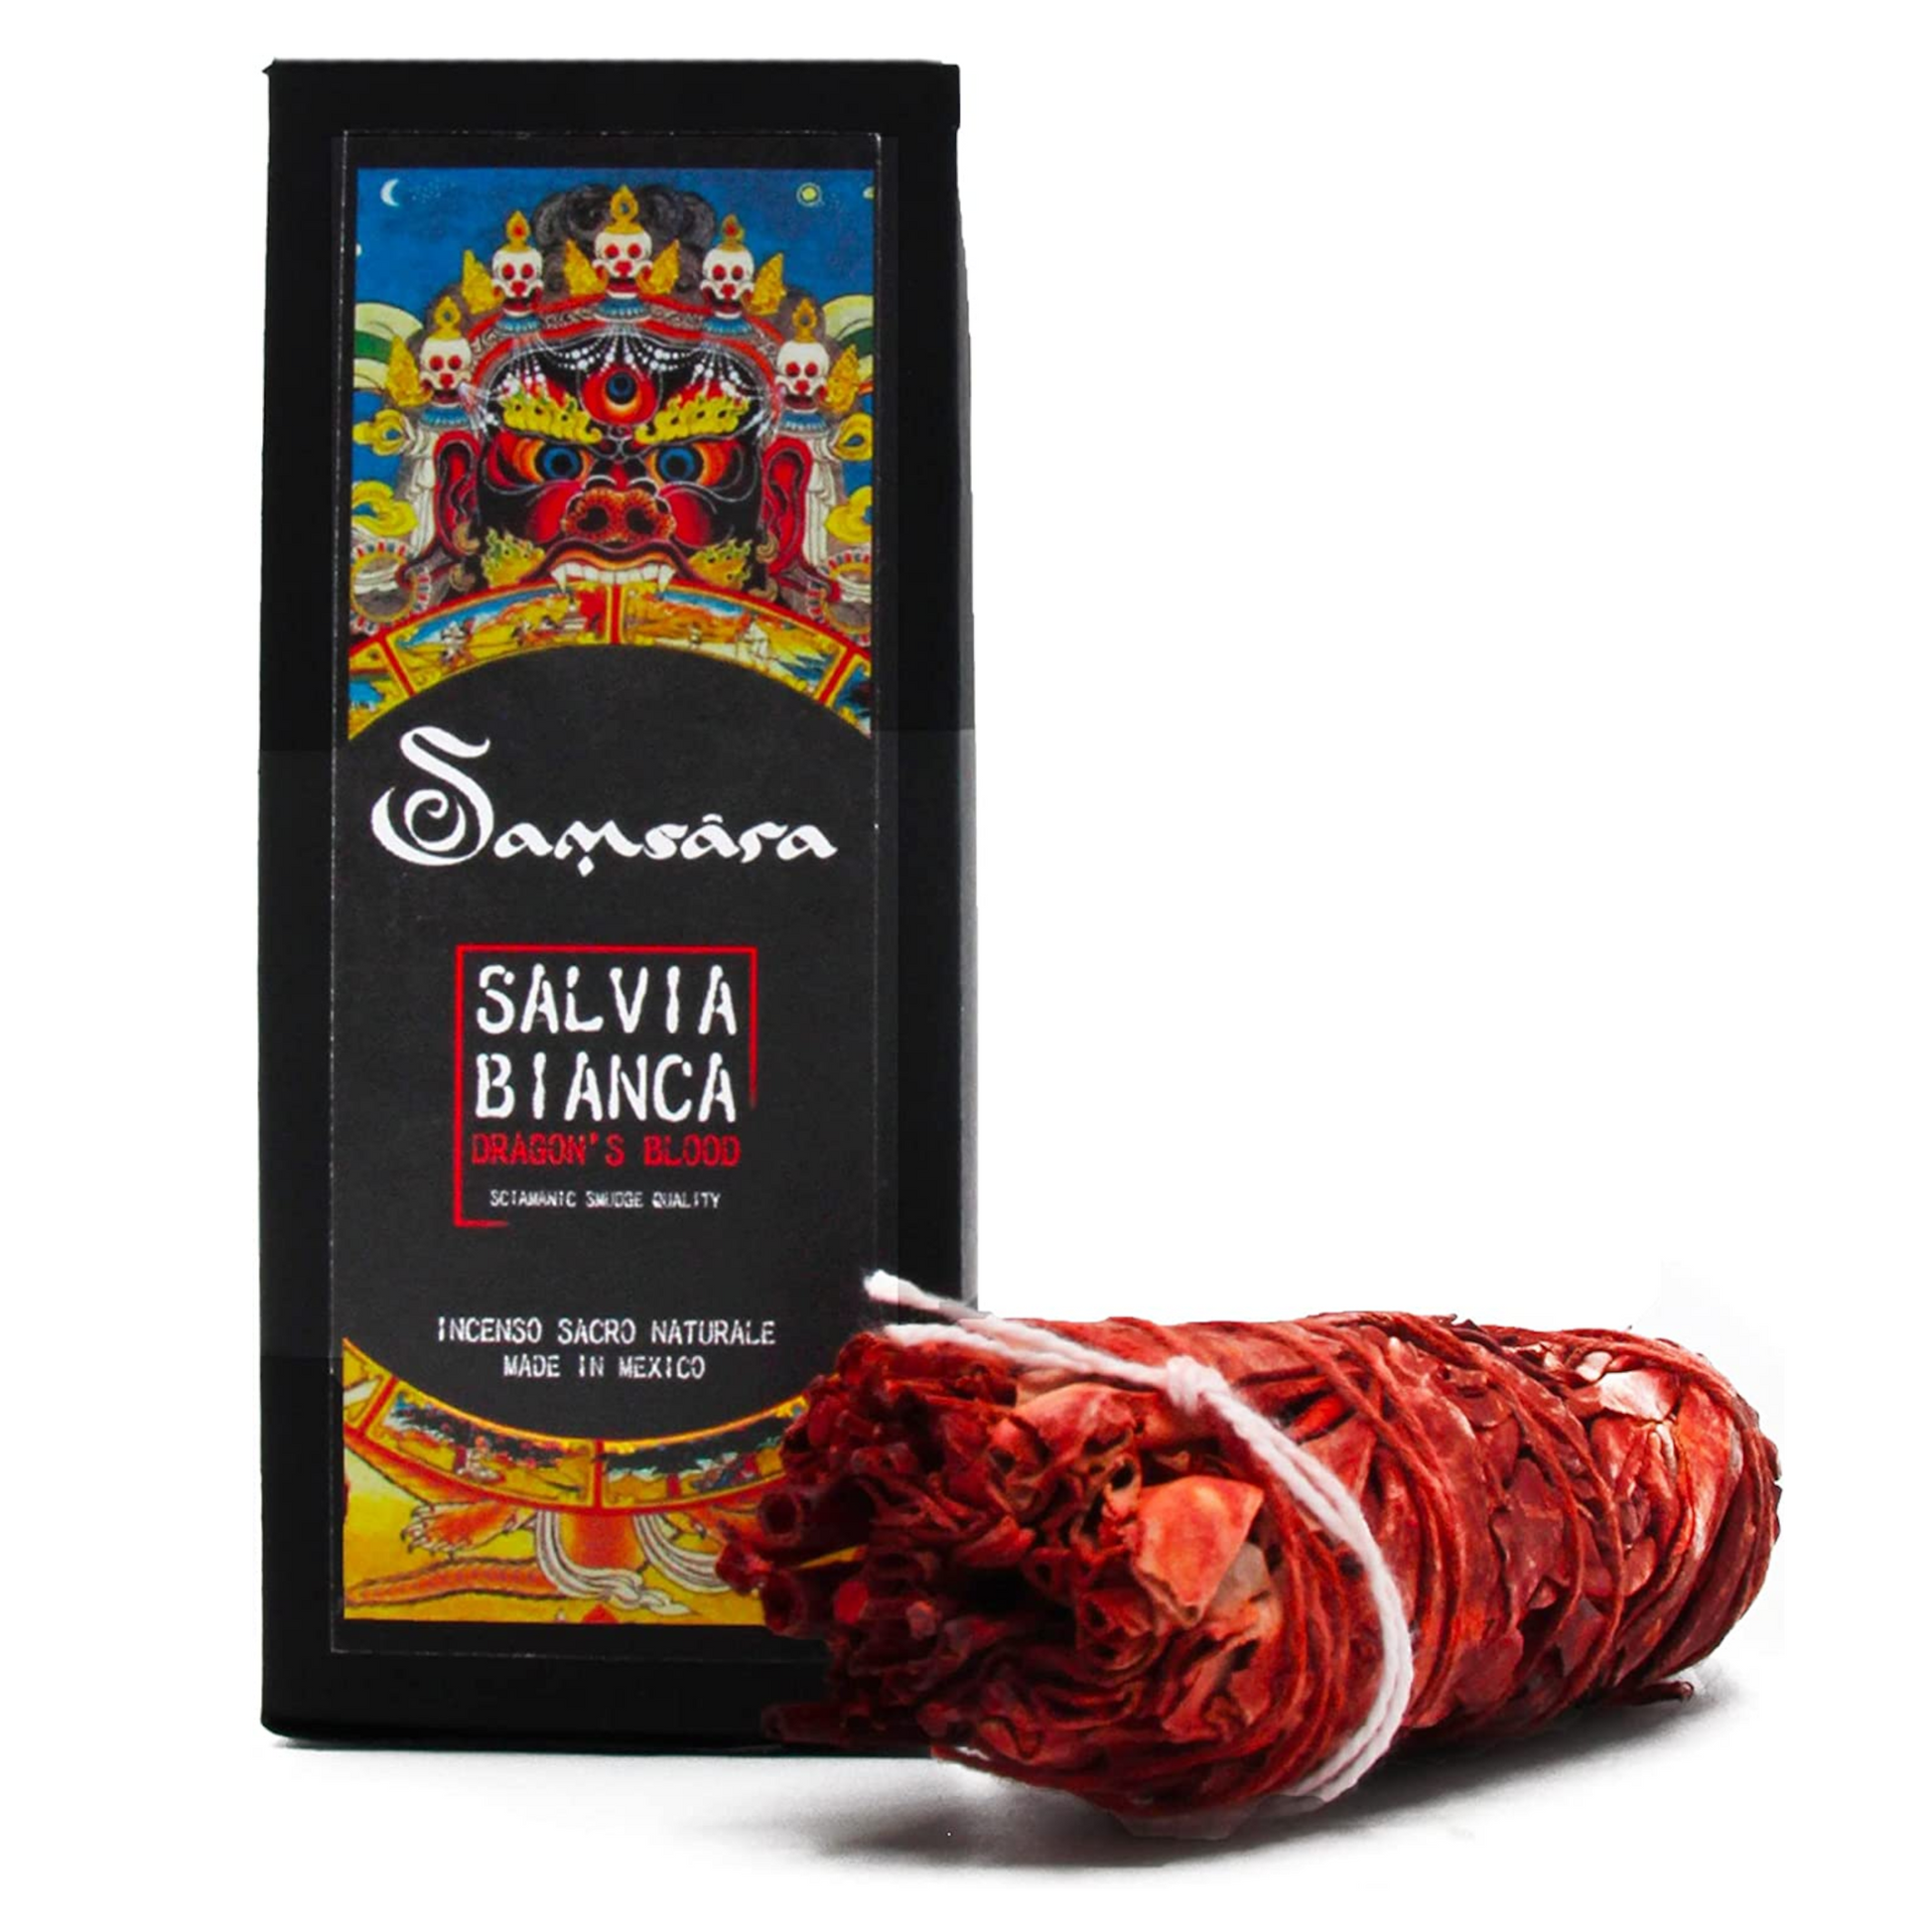 Samsara Smudge Salvia Bianca Dragon's Blood - Incenso Sacro Naturale i –  SamsaraFragrances